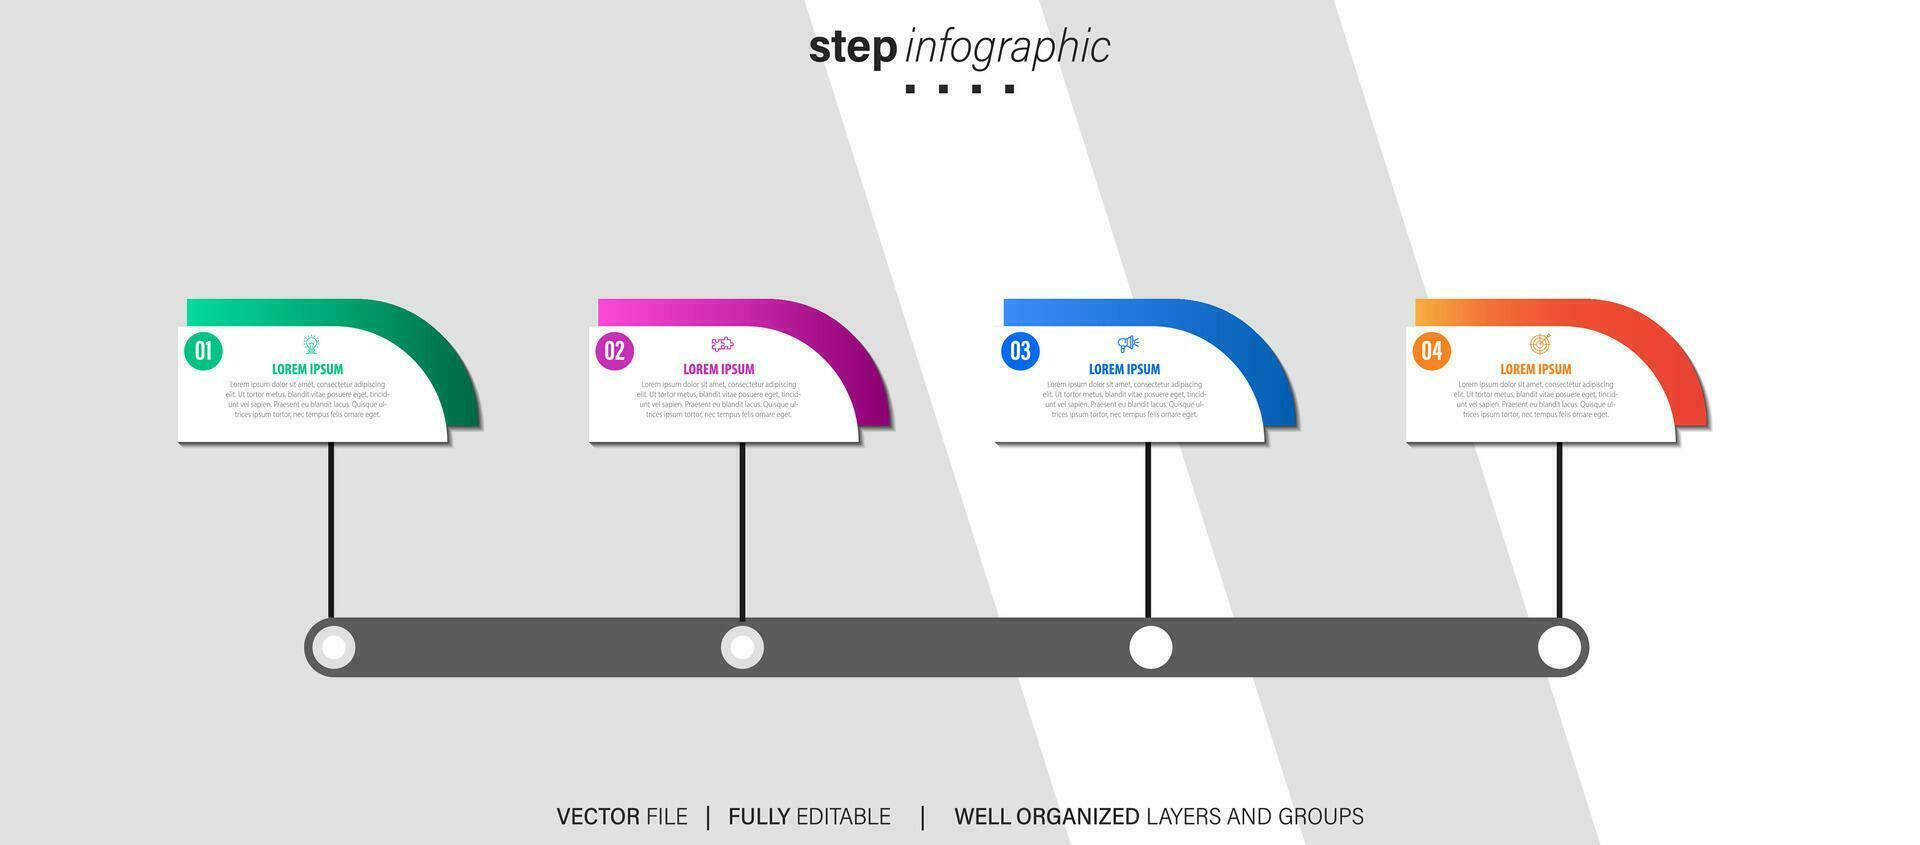 cronograma infografía Delgado línea diseño con iconos modelo para grafico, diagrama, presentaciones negocio concepto con 4 4 opciones vector ilustración.